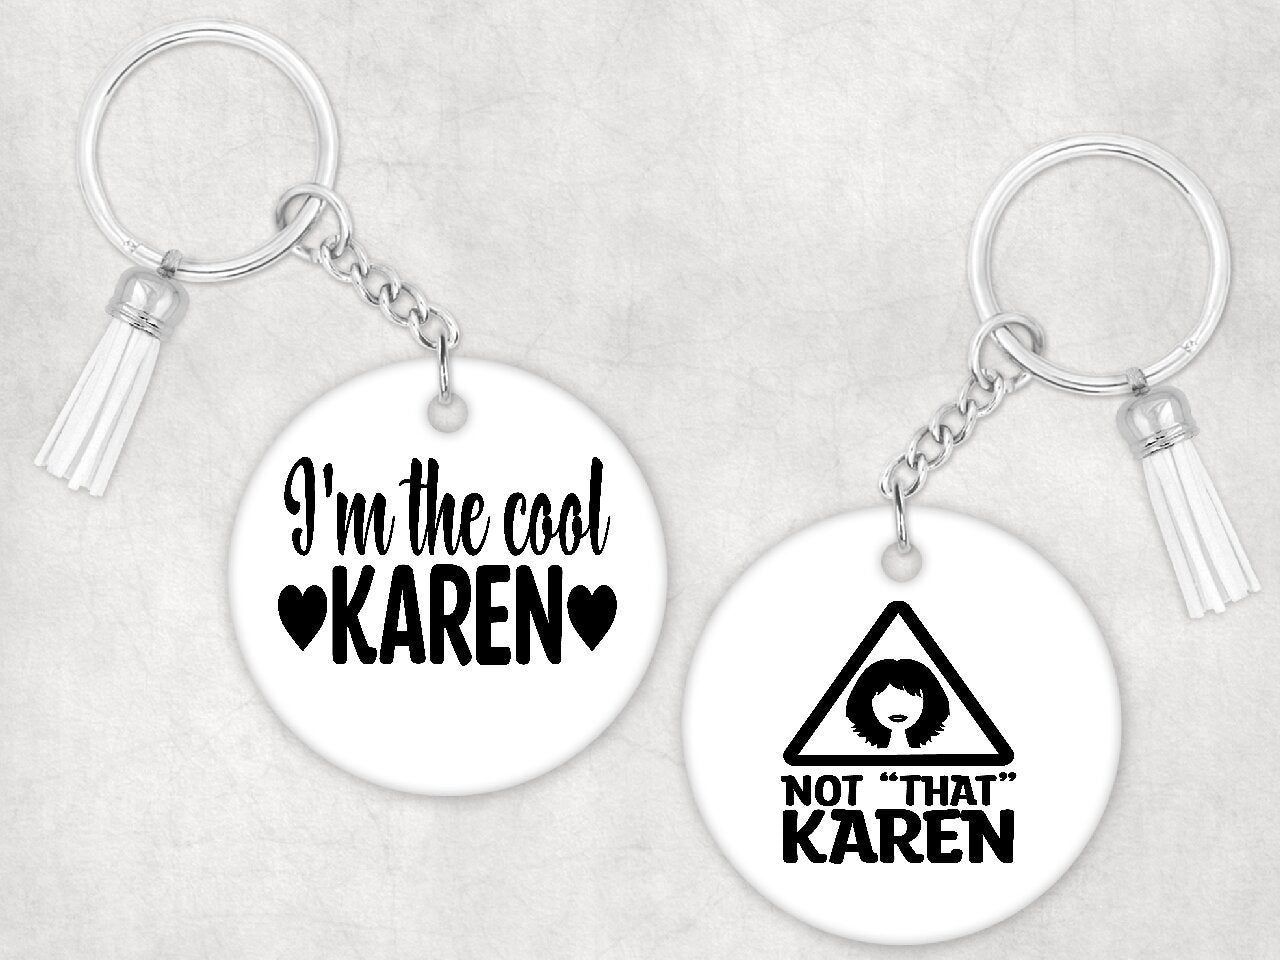 Not "That" Karen - Keychain